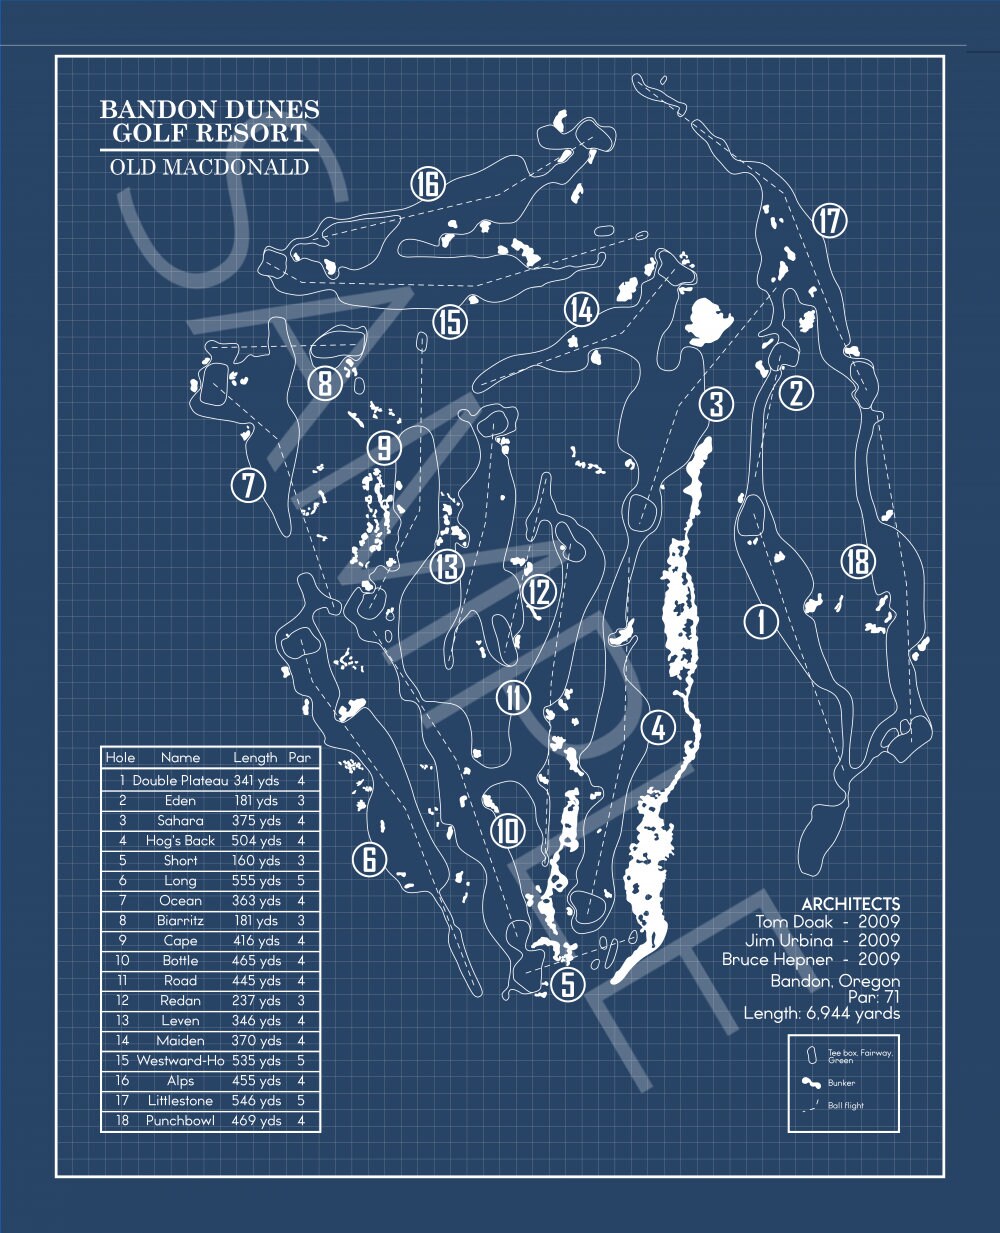 Bandon Dunes Old Macdonald Golf Course Blueprint (Print)